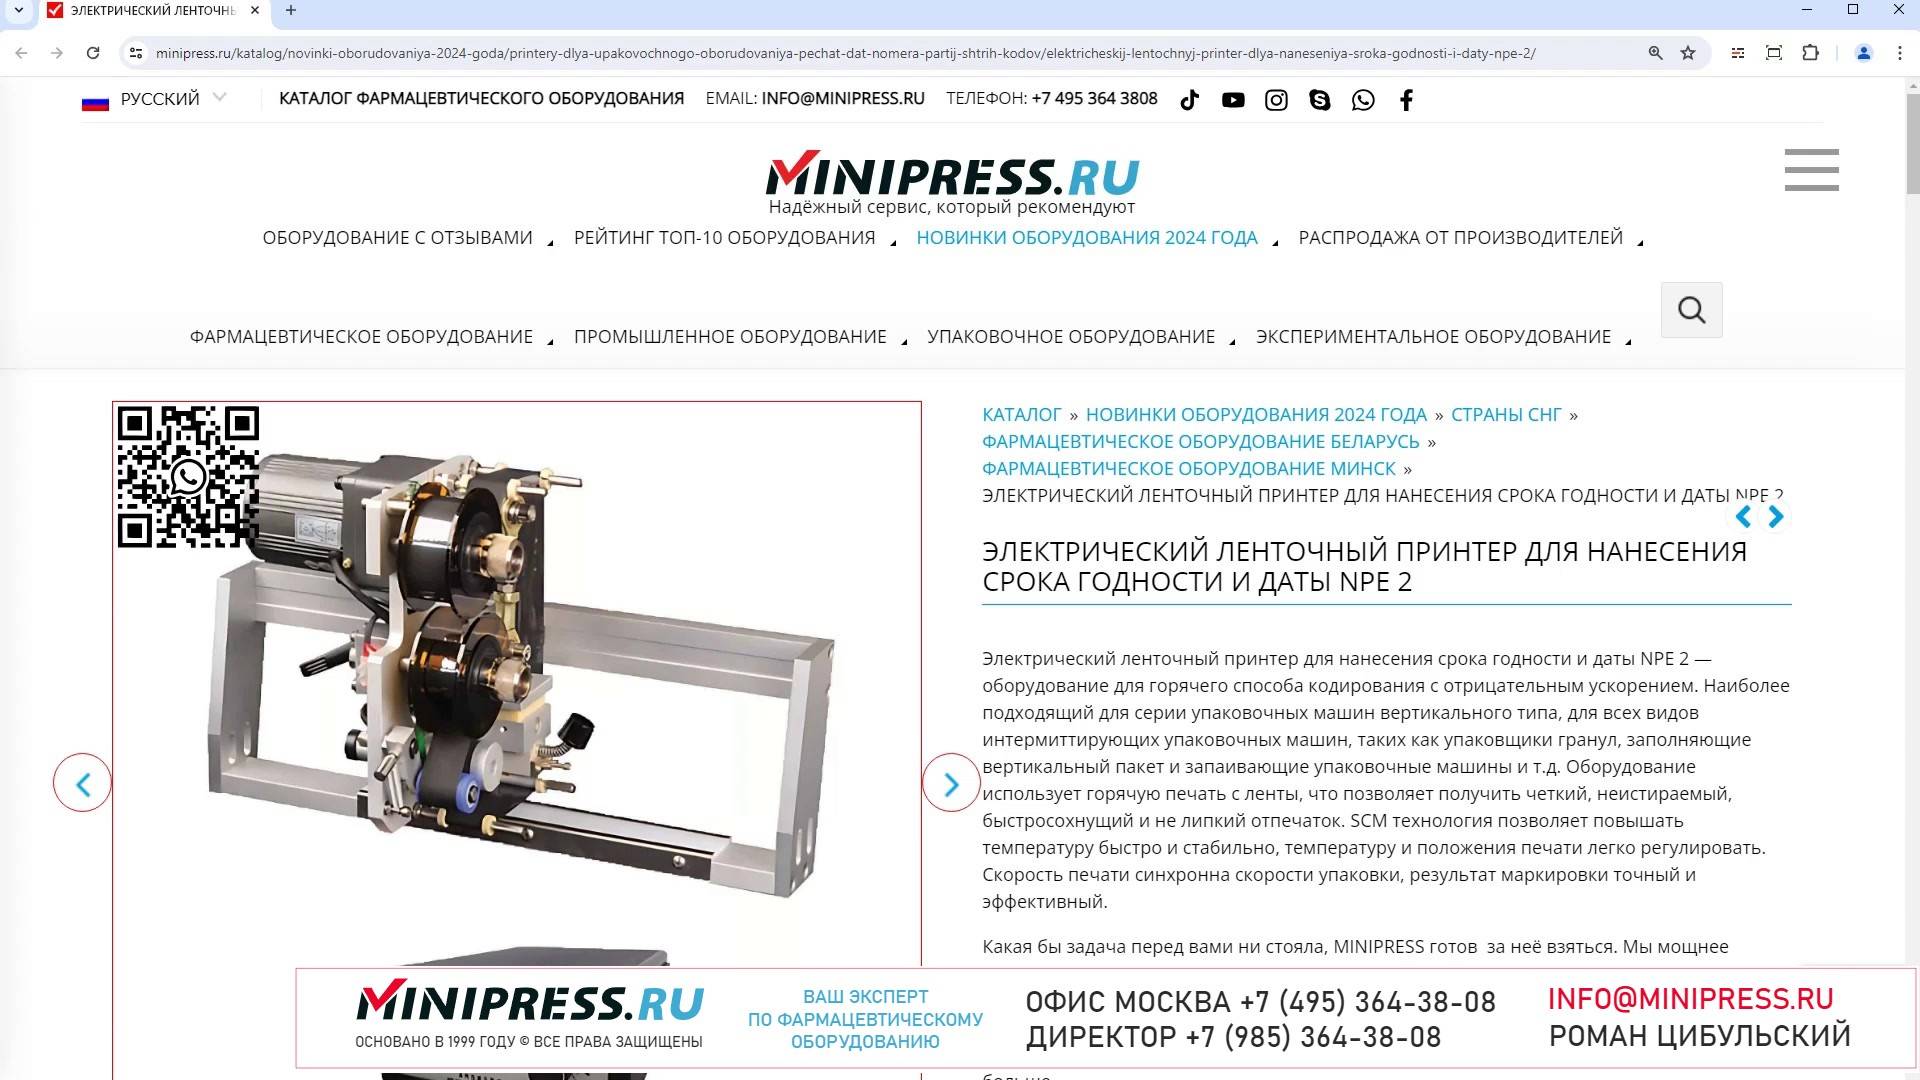 Minipress.ru Электрический ленточный принтер для нанесения срока годности и даты NPE 2